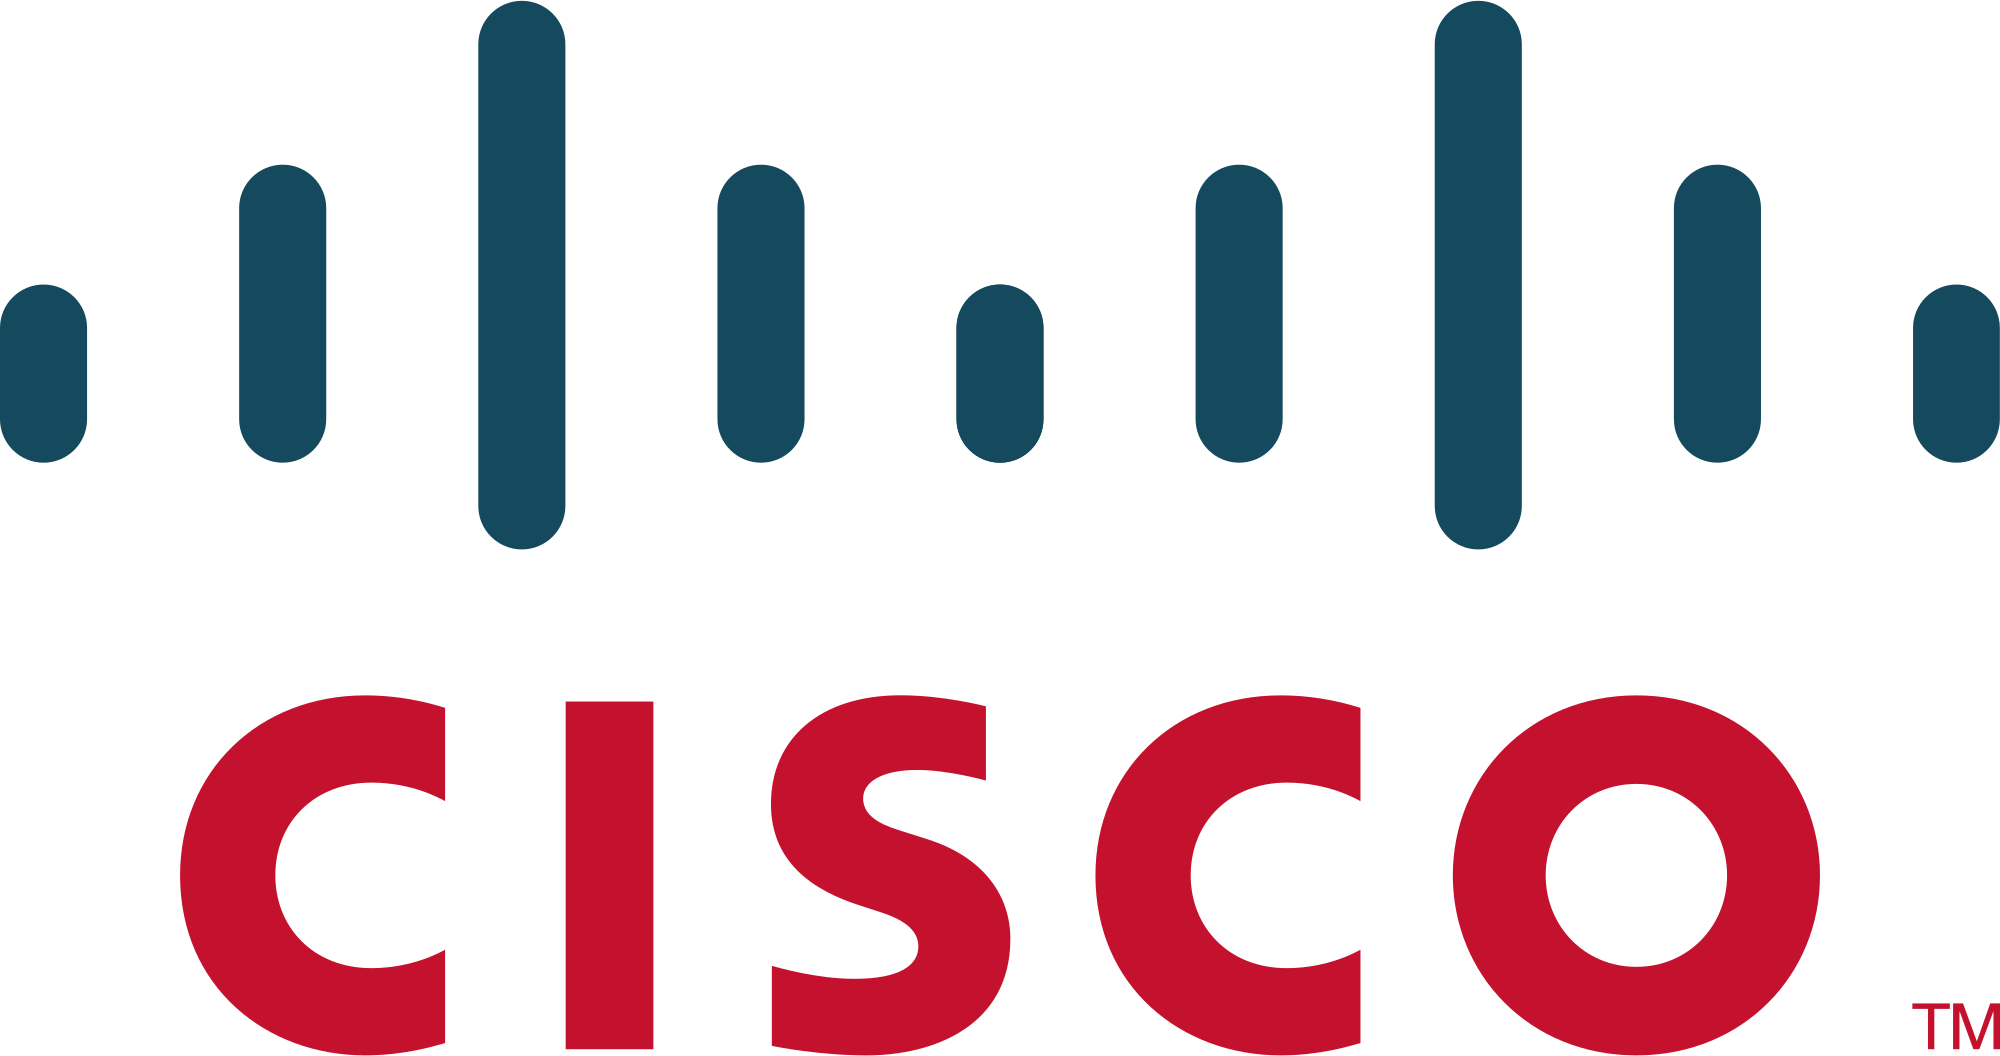  سیسکو - Cisco برای افرادی که حتی بسیار کم با تجهیزات شبکه آشنا هستند آشنا است . کمپانی غول آمریکایی که در سال 1984 در شهر سن خوزه کالیفرنیا با هدف تهیه و تولید تجهیزات شبکه تاسیس شد . 